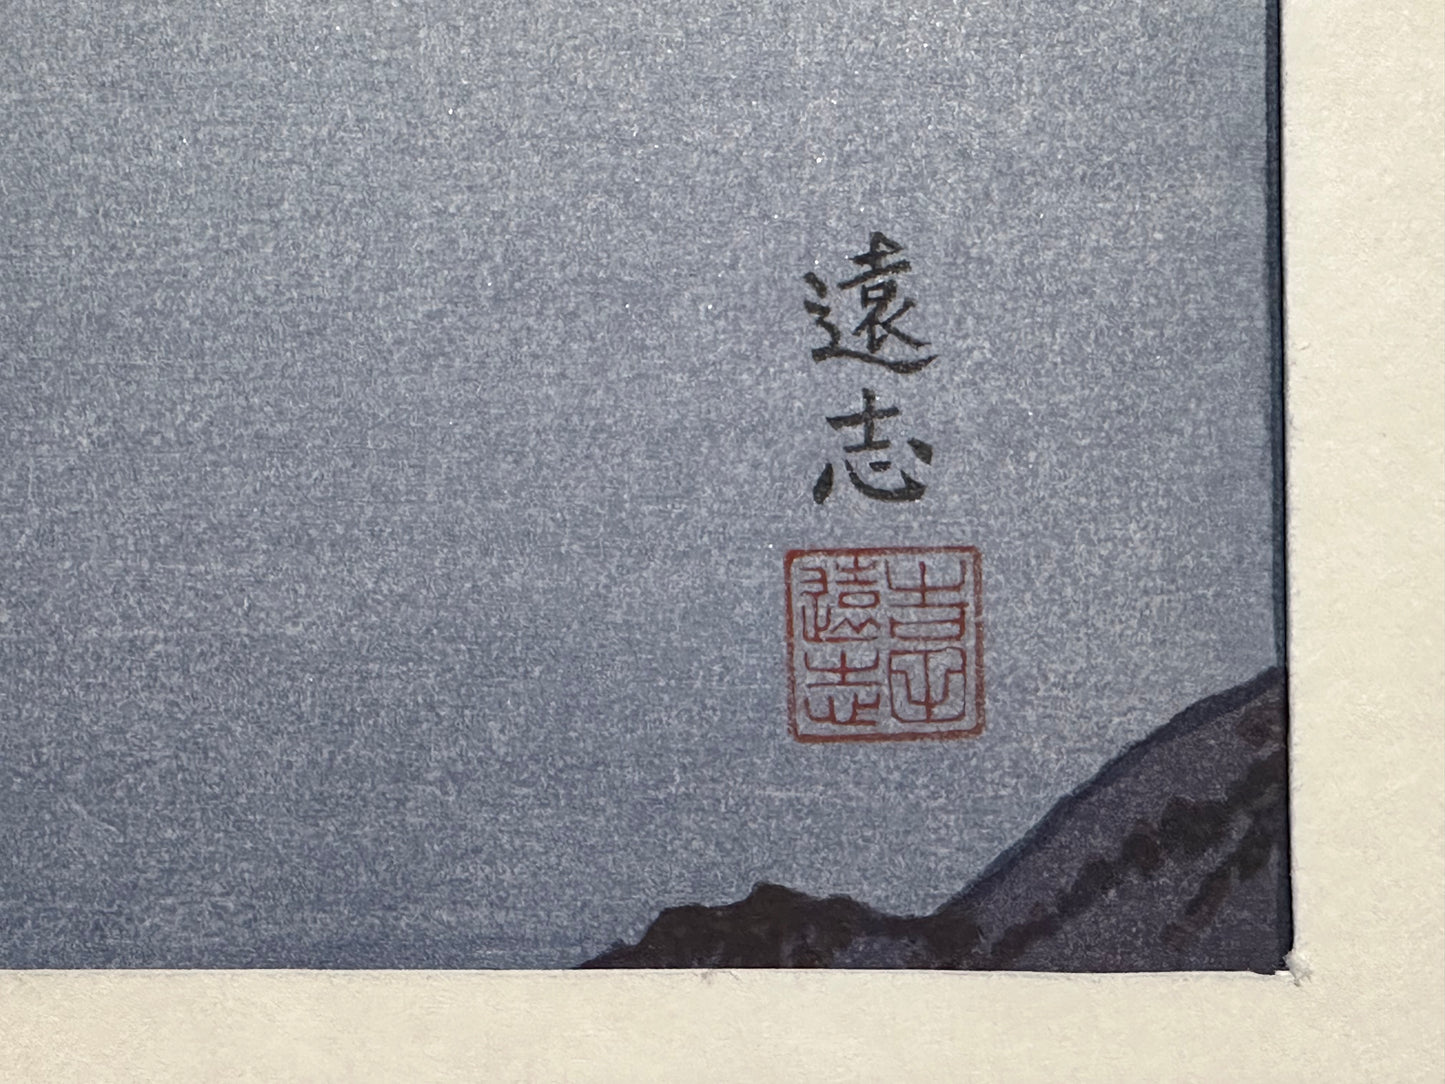 Toshi Yoshida Woodblock Print Mt Fuji from Katsuragi Yama 1983